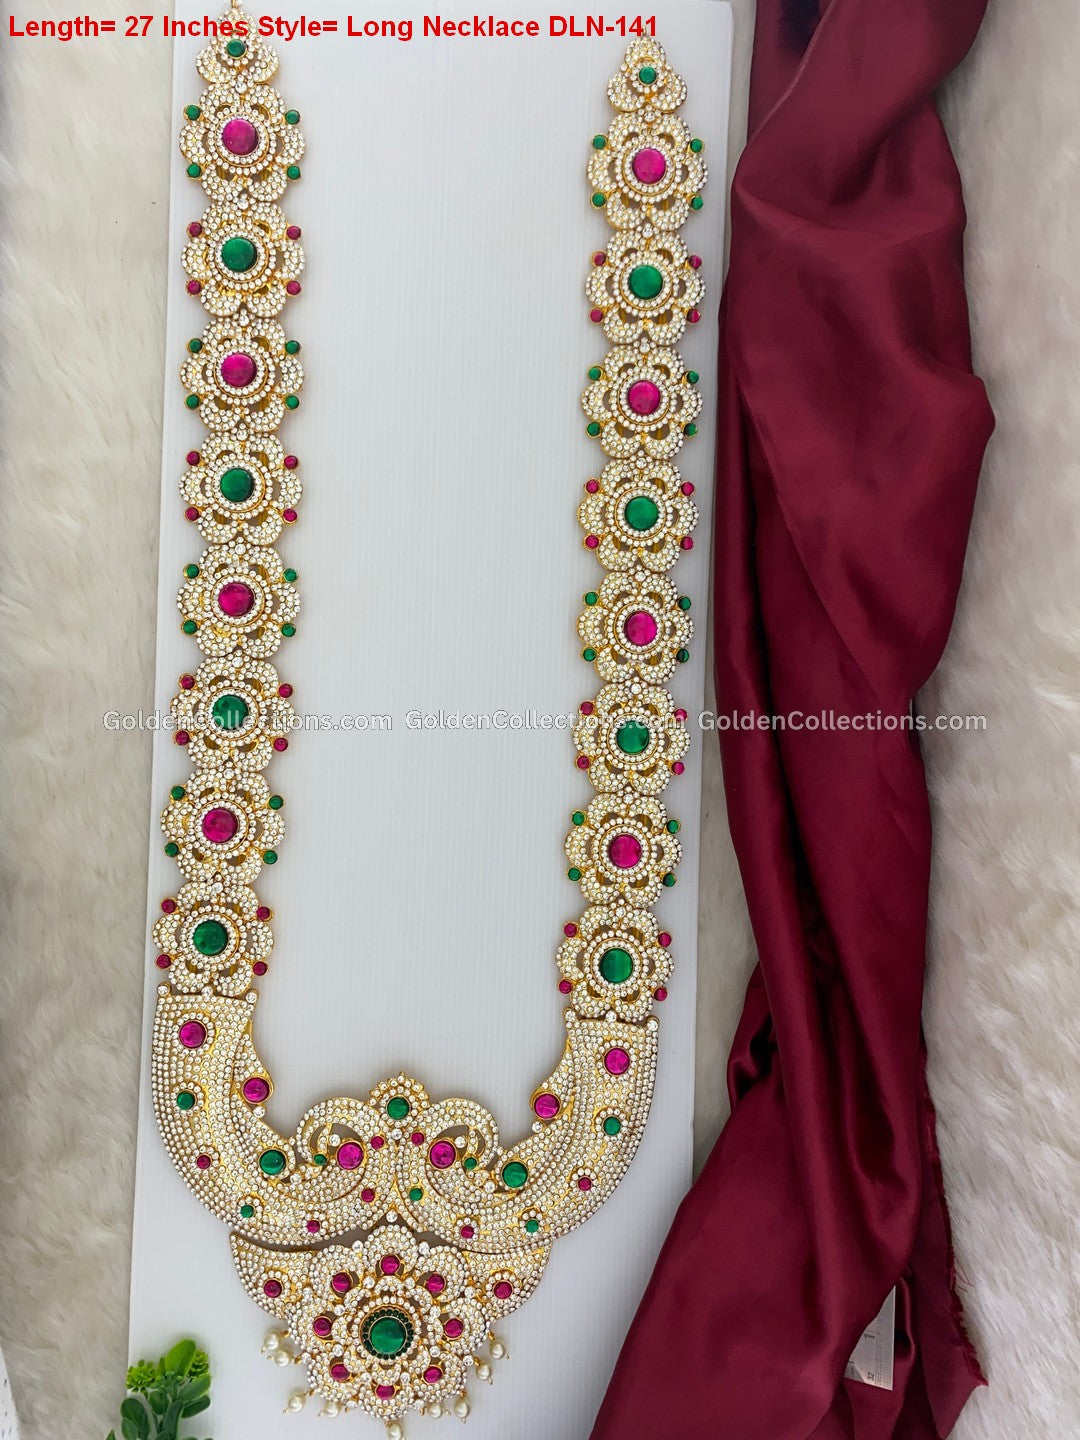 Hindu God Jewellery Ensemble - Stone Necklace DLN-141